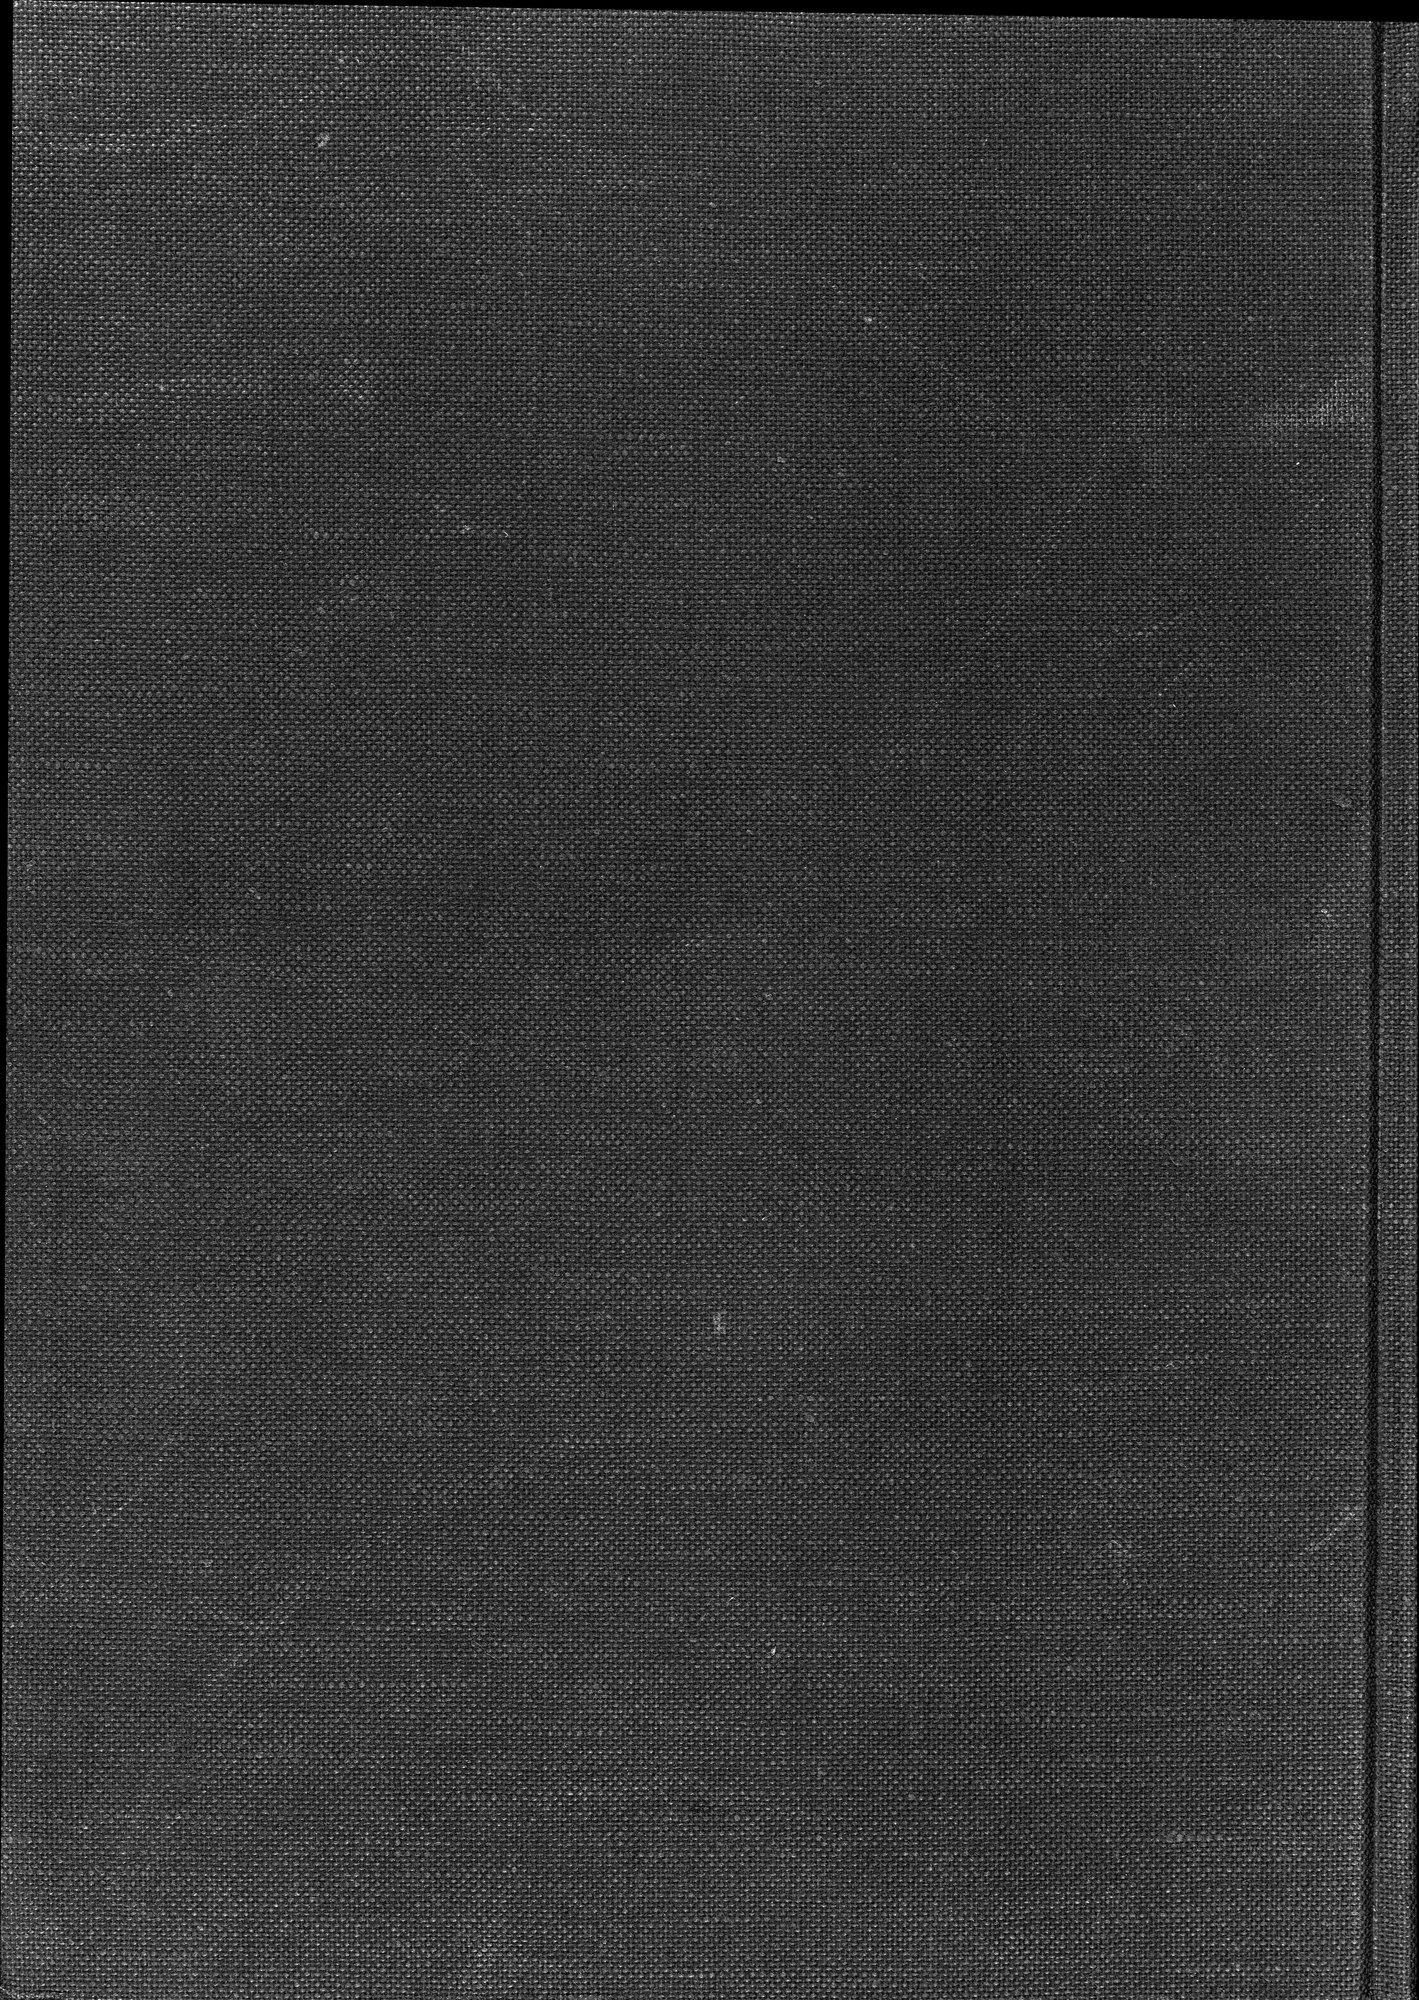 羅布淖爾考古記 : vol.1 / Page 1 (Grayscale High Resolution Image)